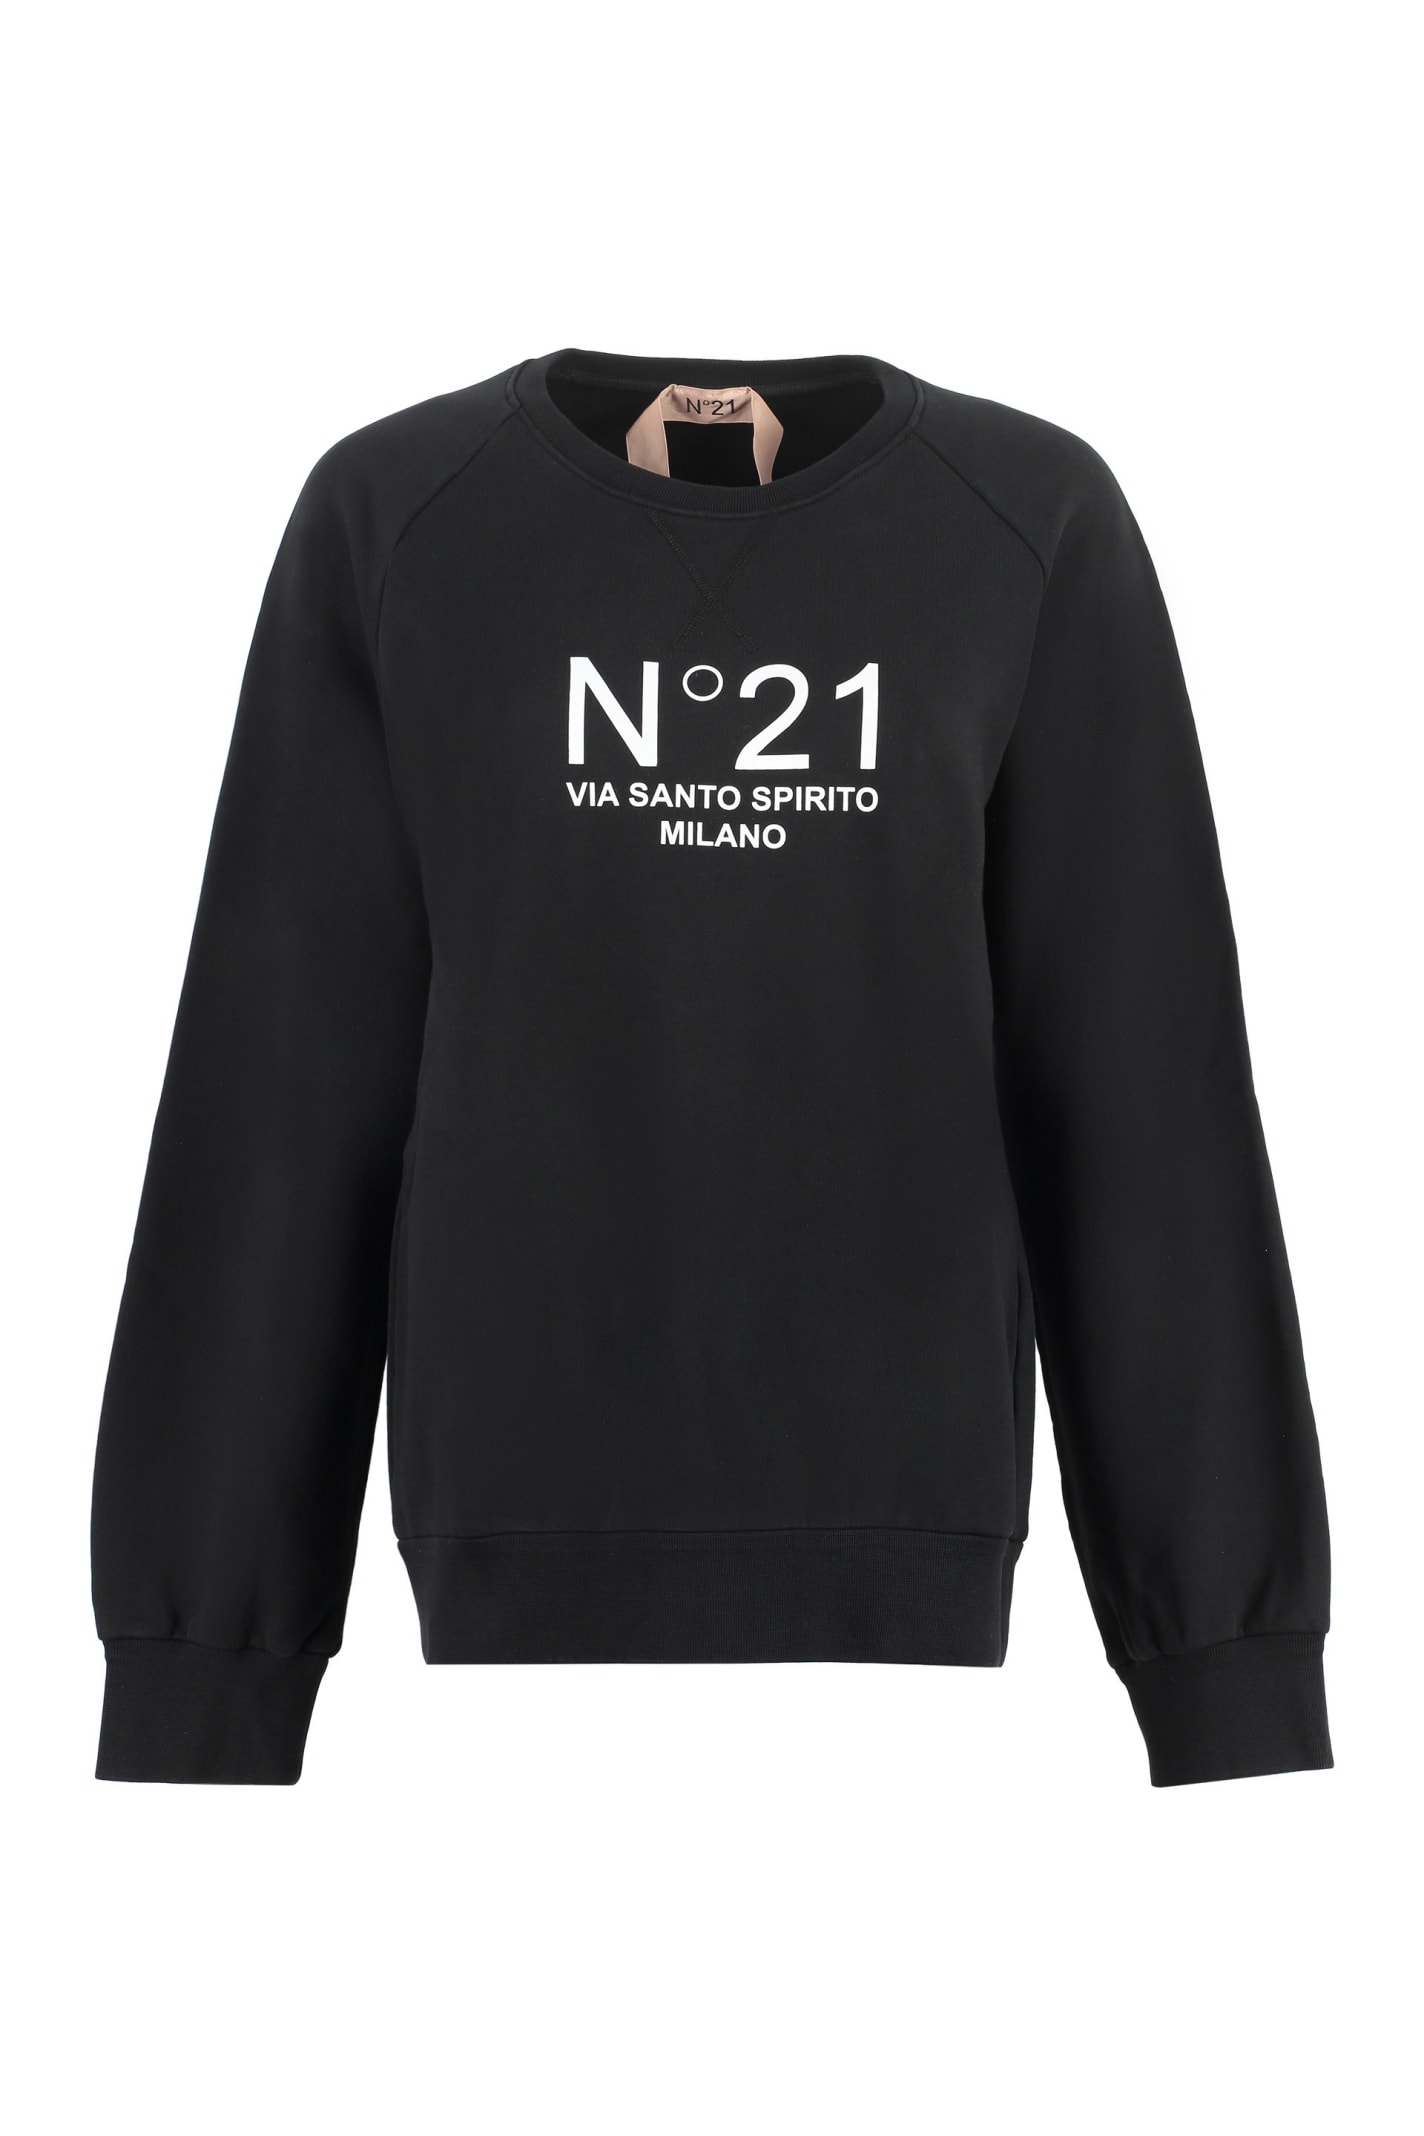 N.21 Printed Cotton Sweatshirt